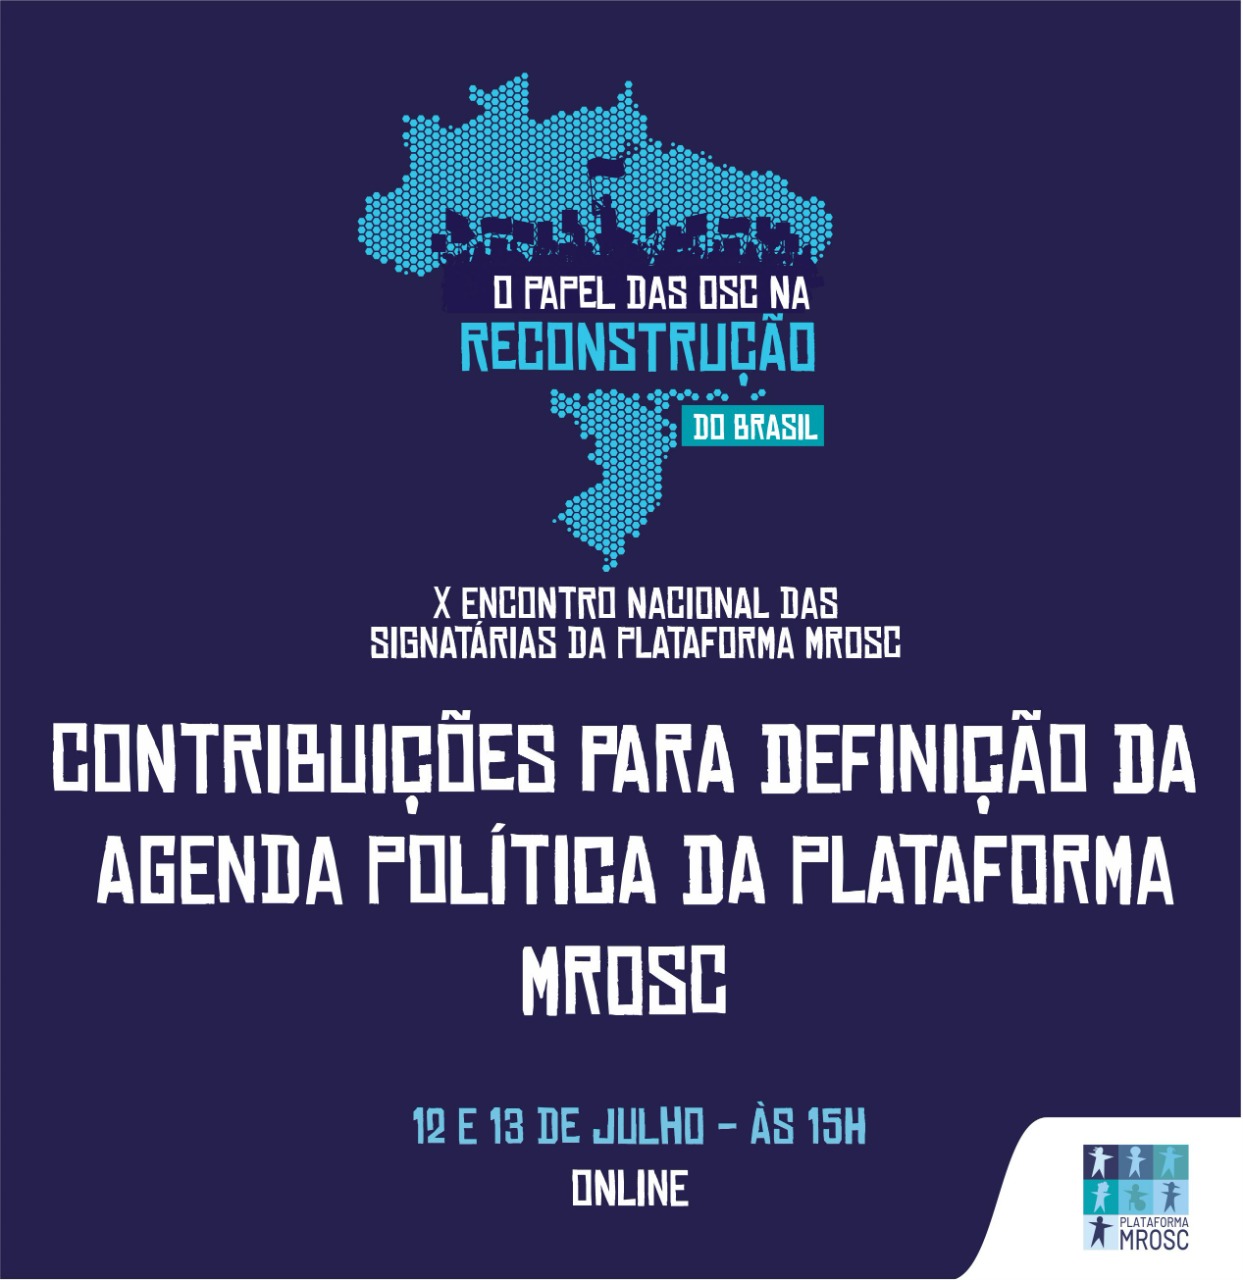 Contribuições para definição da Agenda Política da Plataforma MROSC